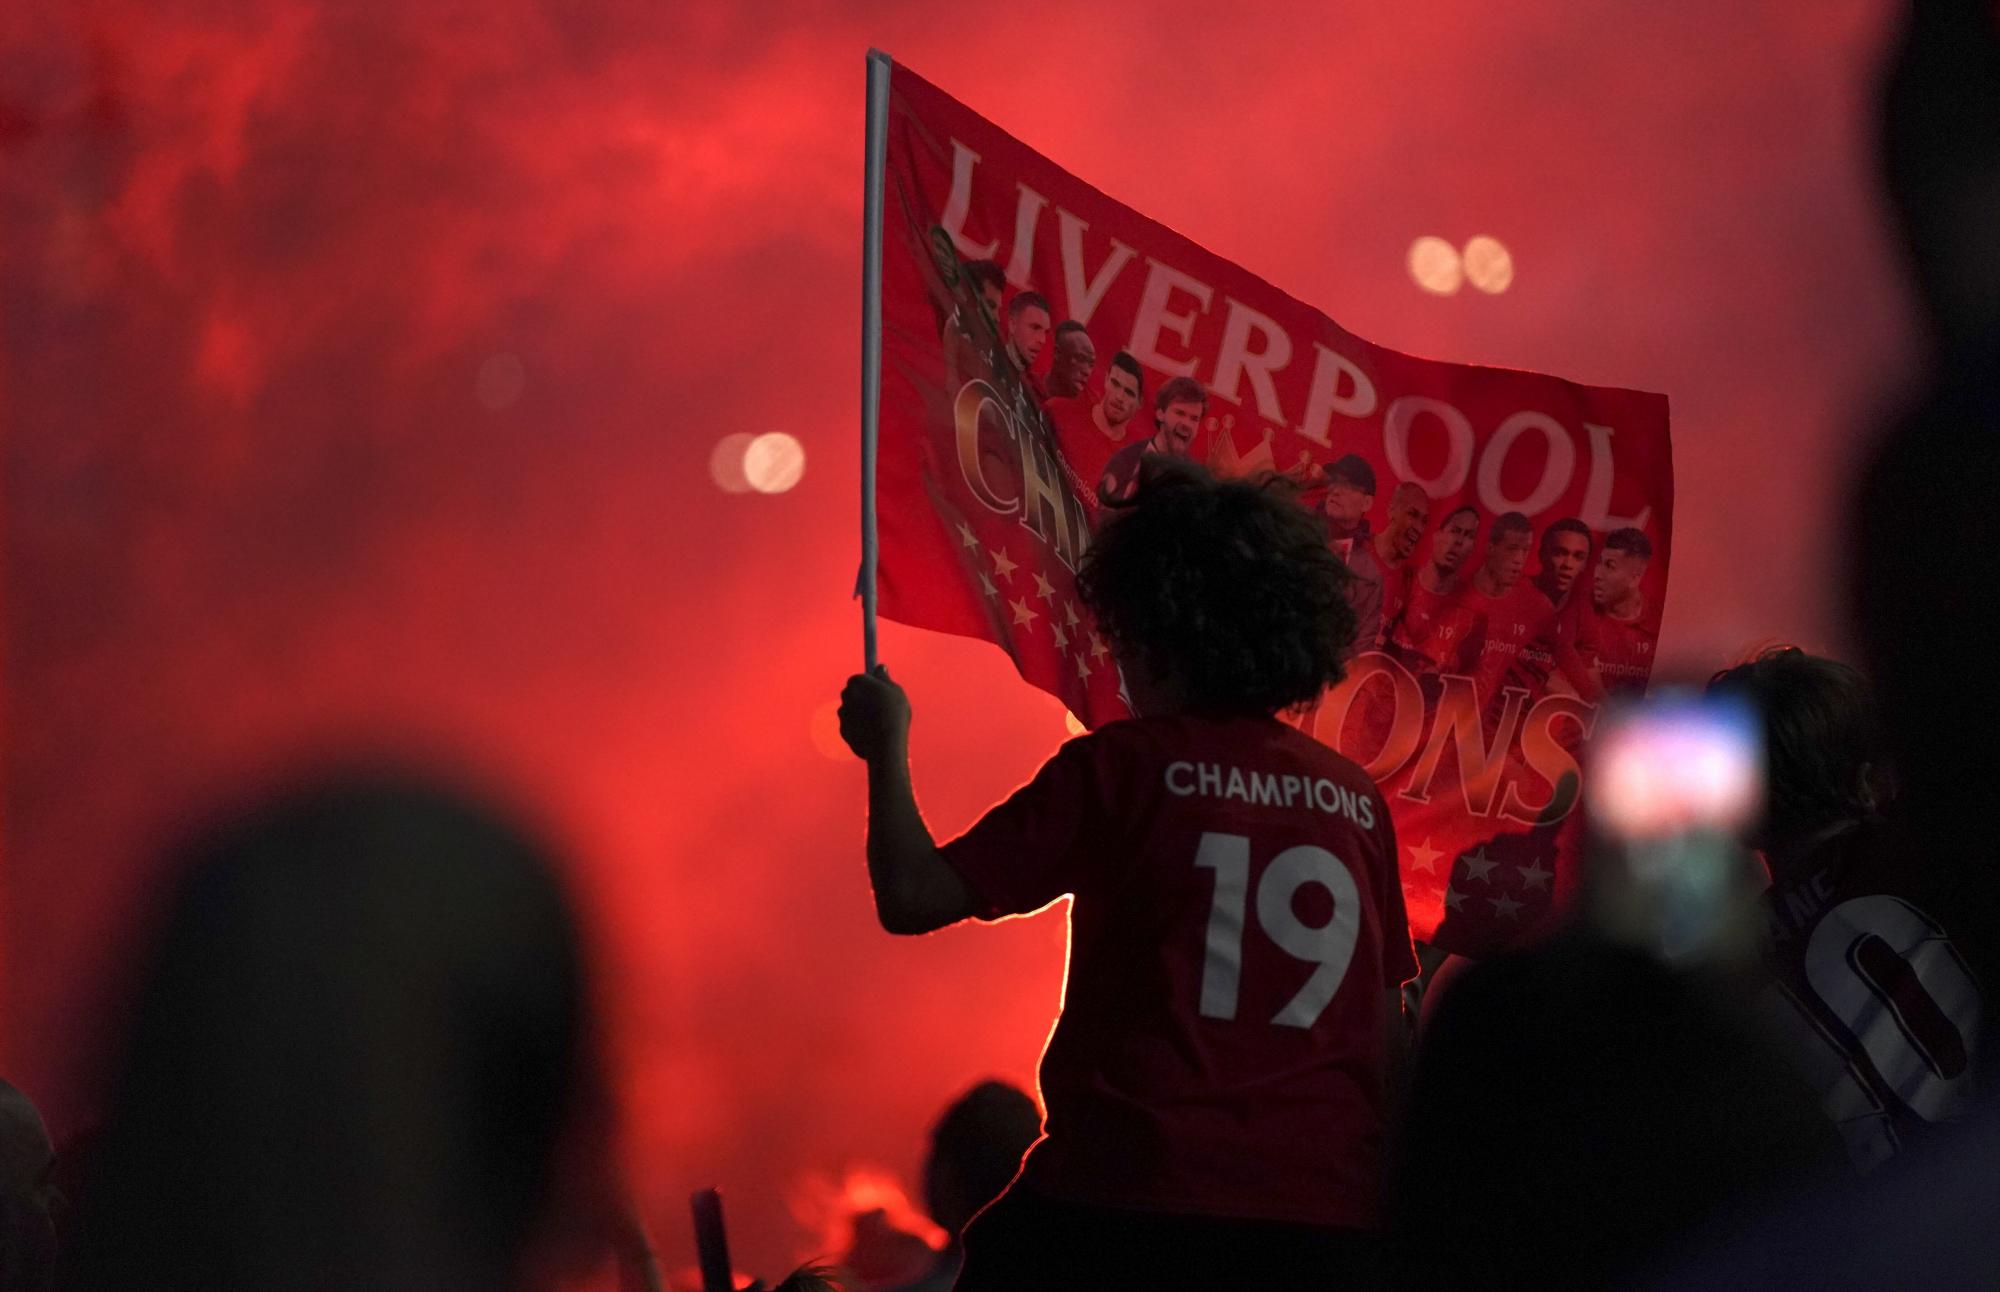 30 años no son nada: Liverpool es el nuevo monarca inglés